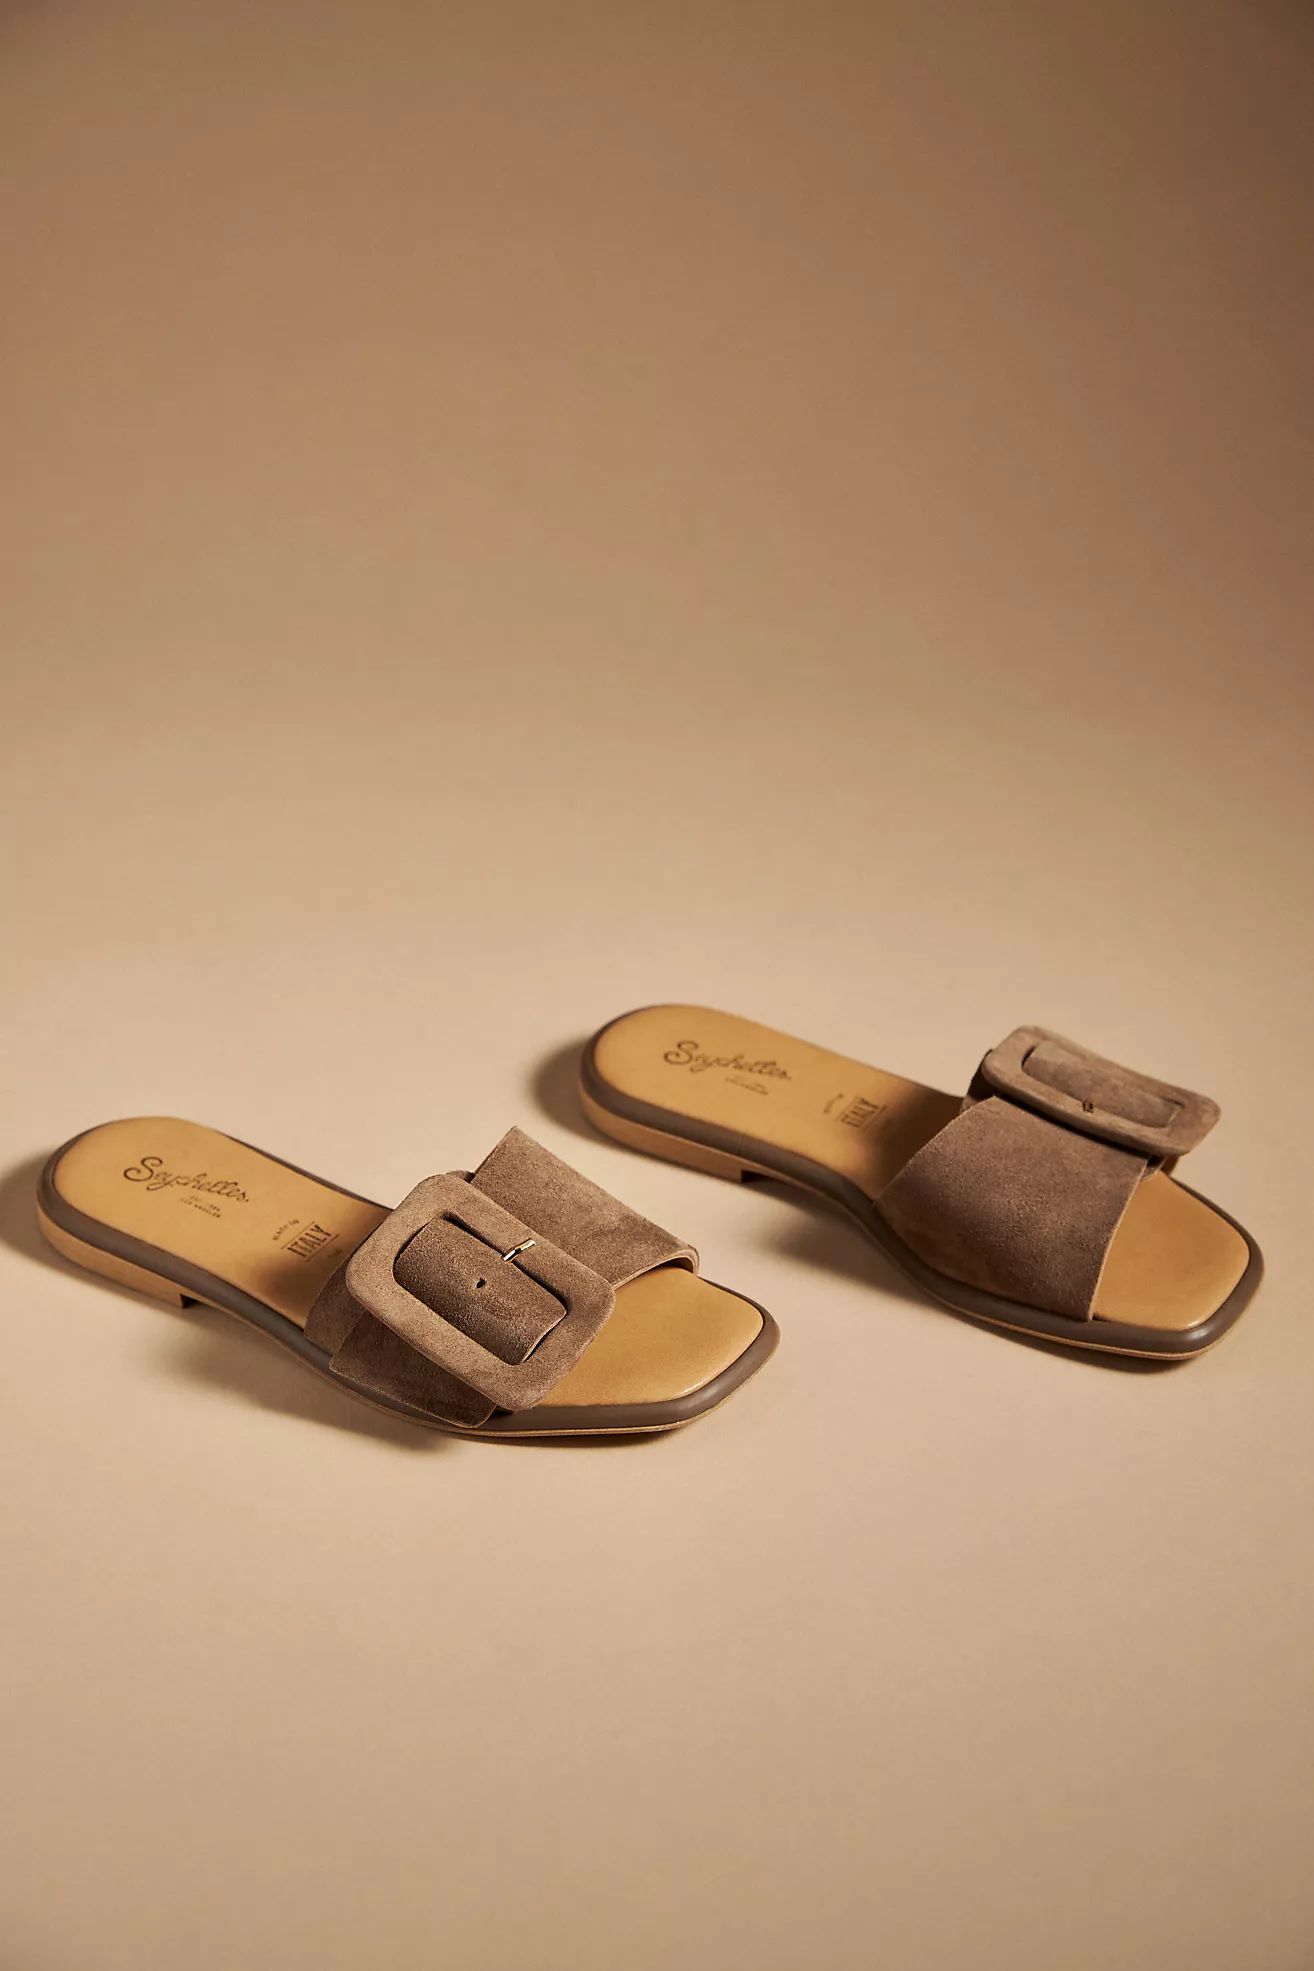 Seychelles Manhattan Sandals | Anthropologie (US)